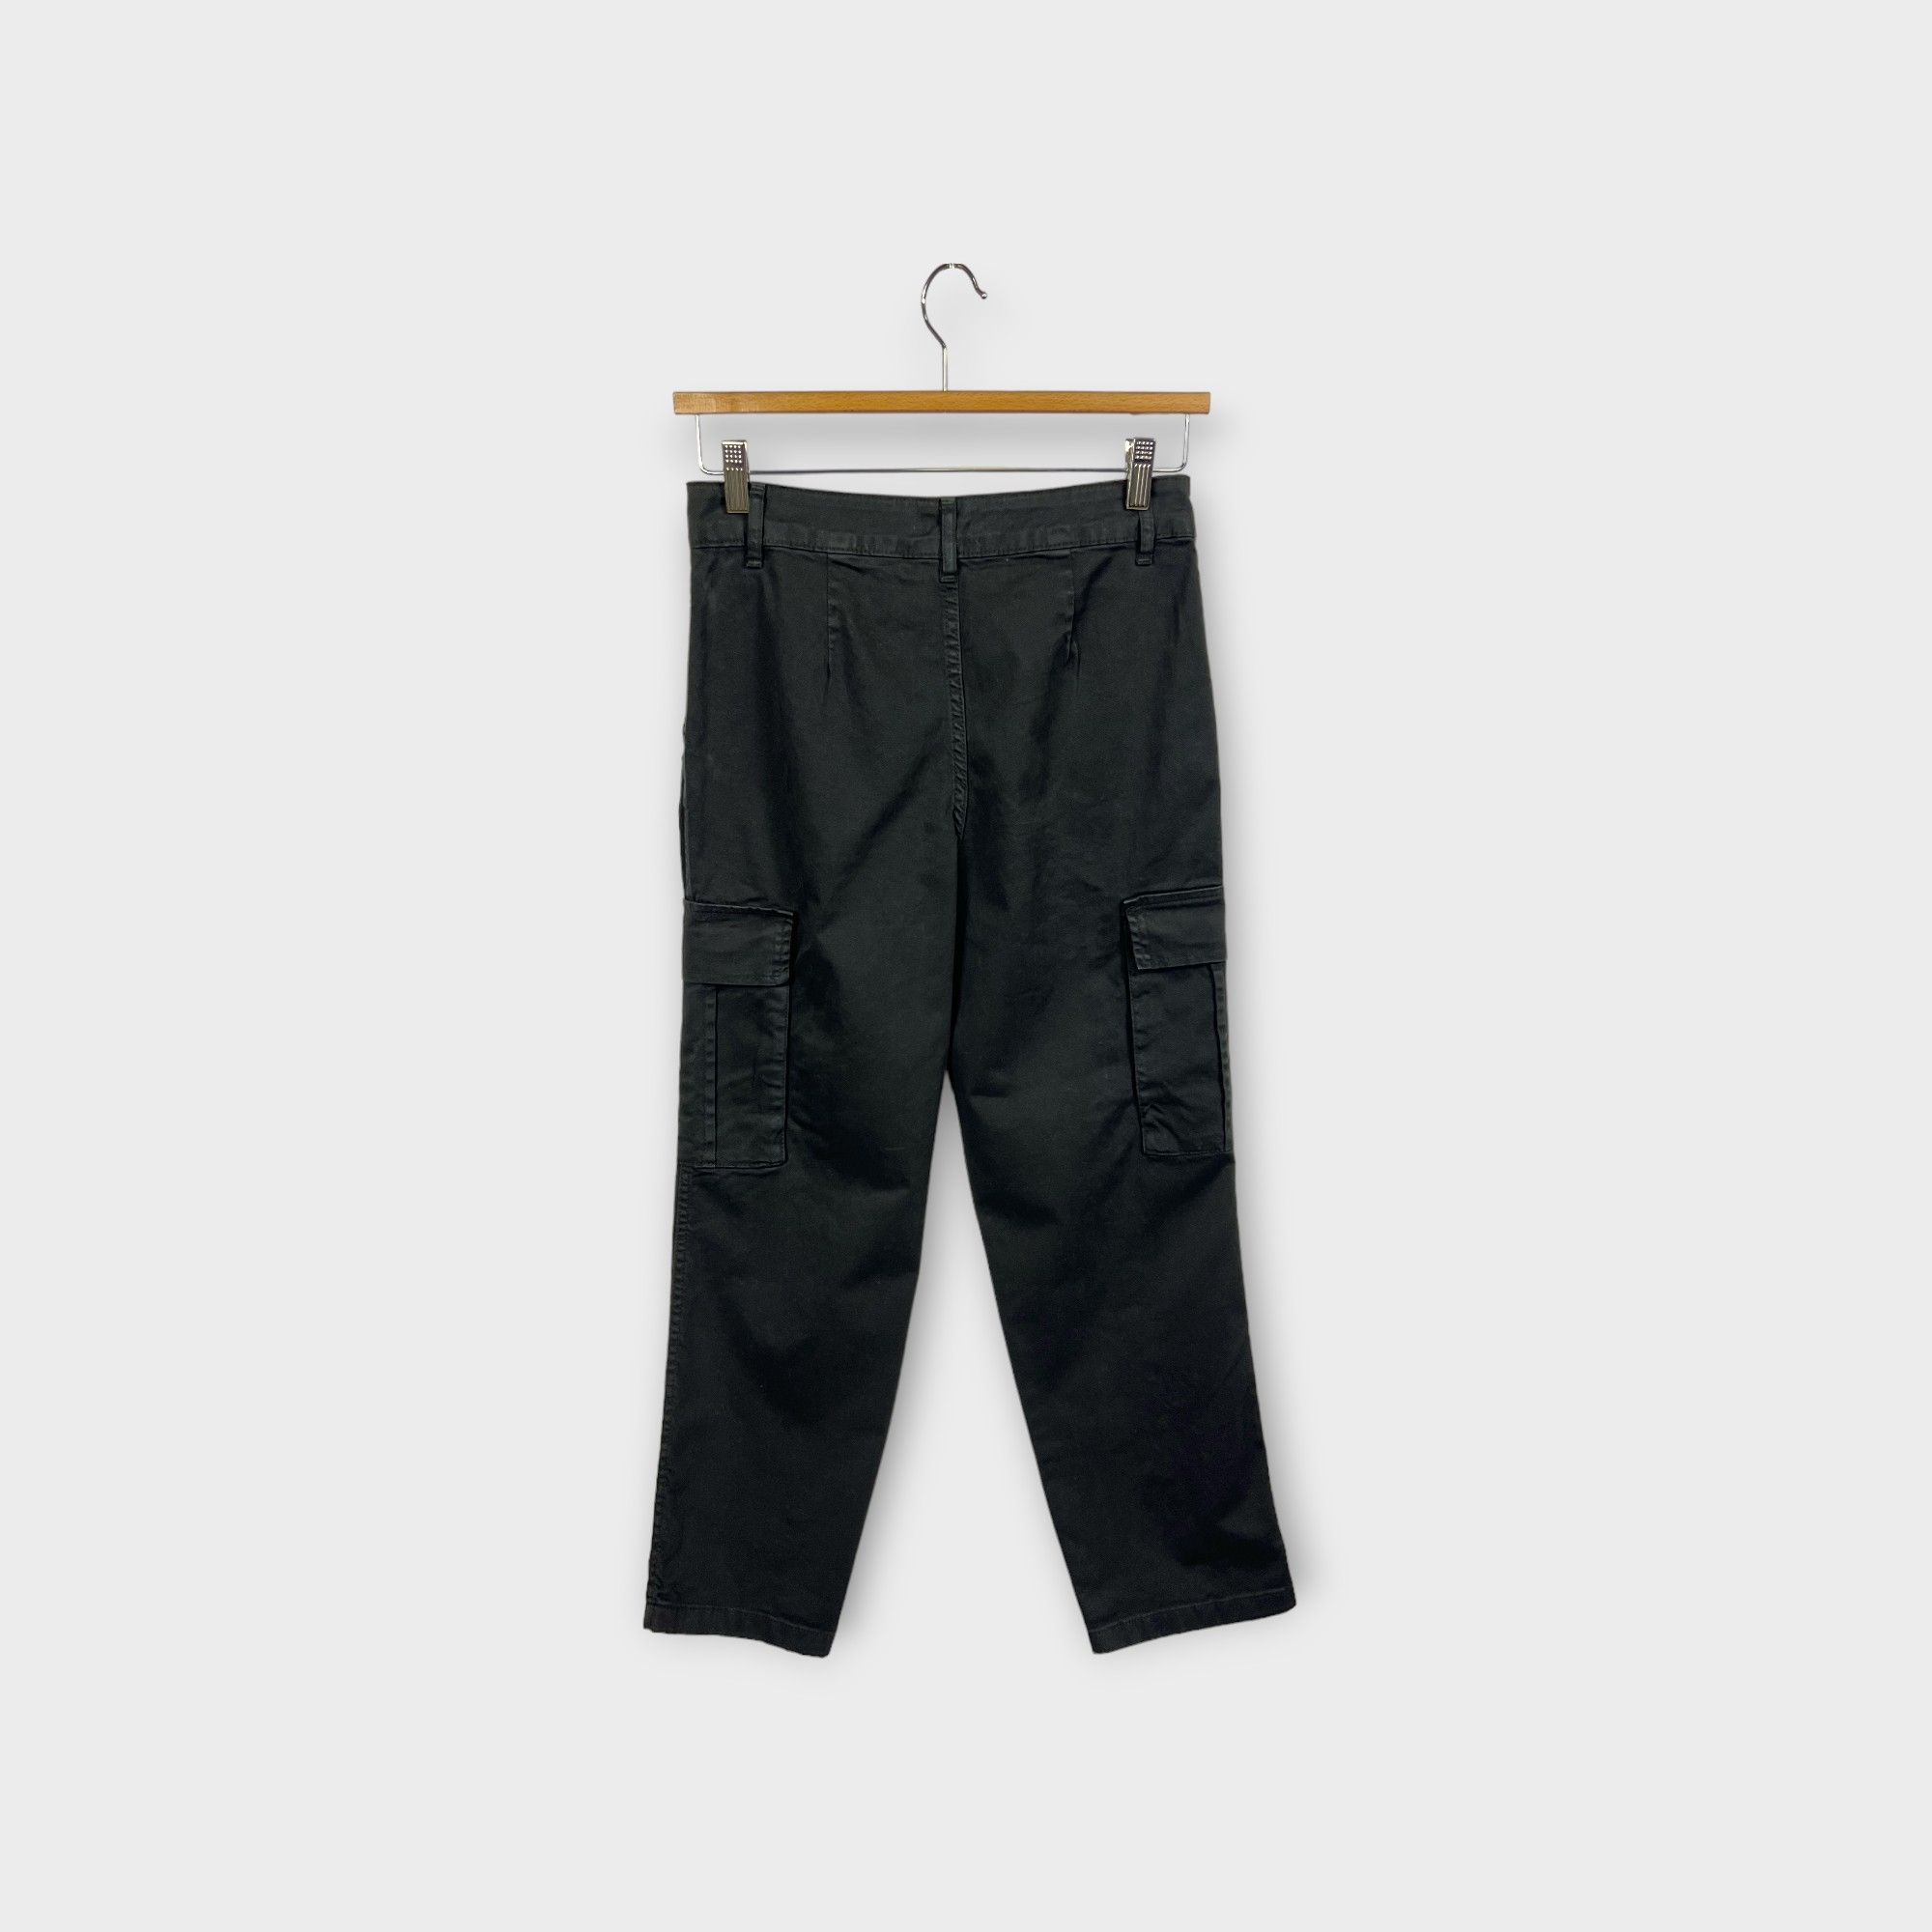 images/virtuemart/product/HELLEH Pantaloni donna modello cargo con tasche laterali in cotone stretch tinto in capo colore nero 2.jpg